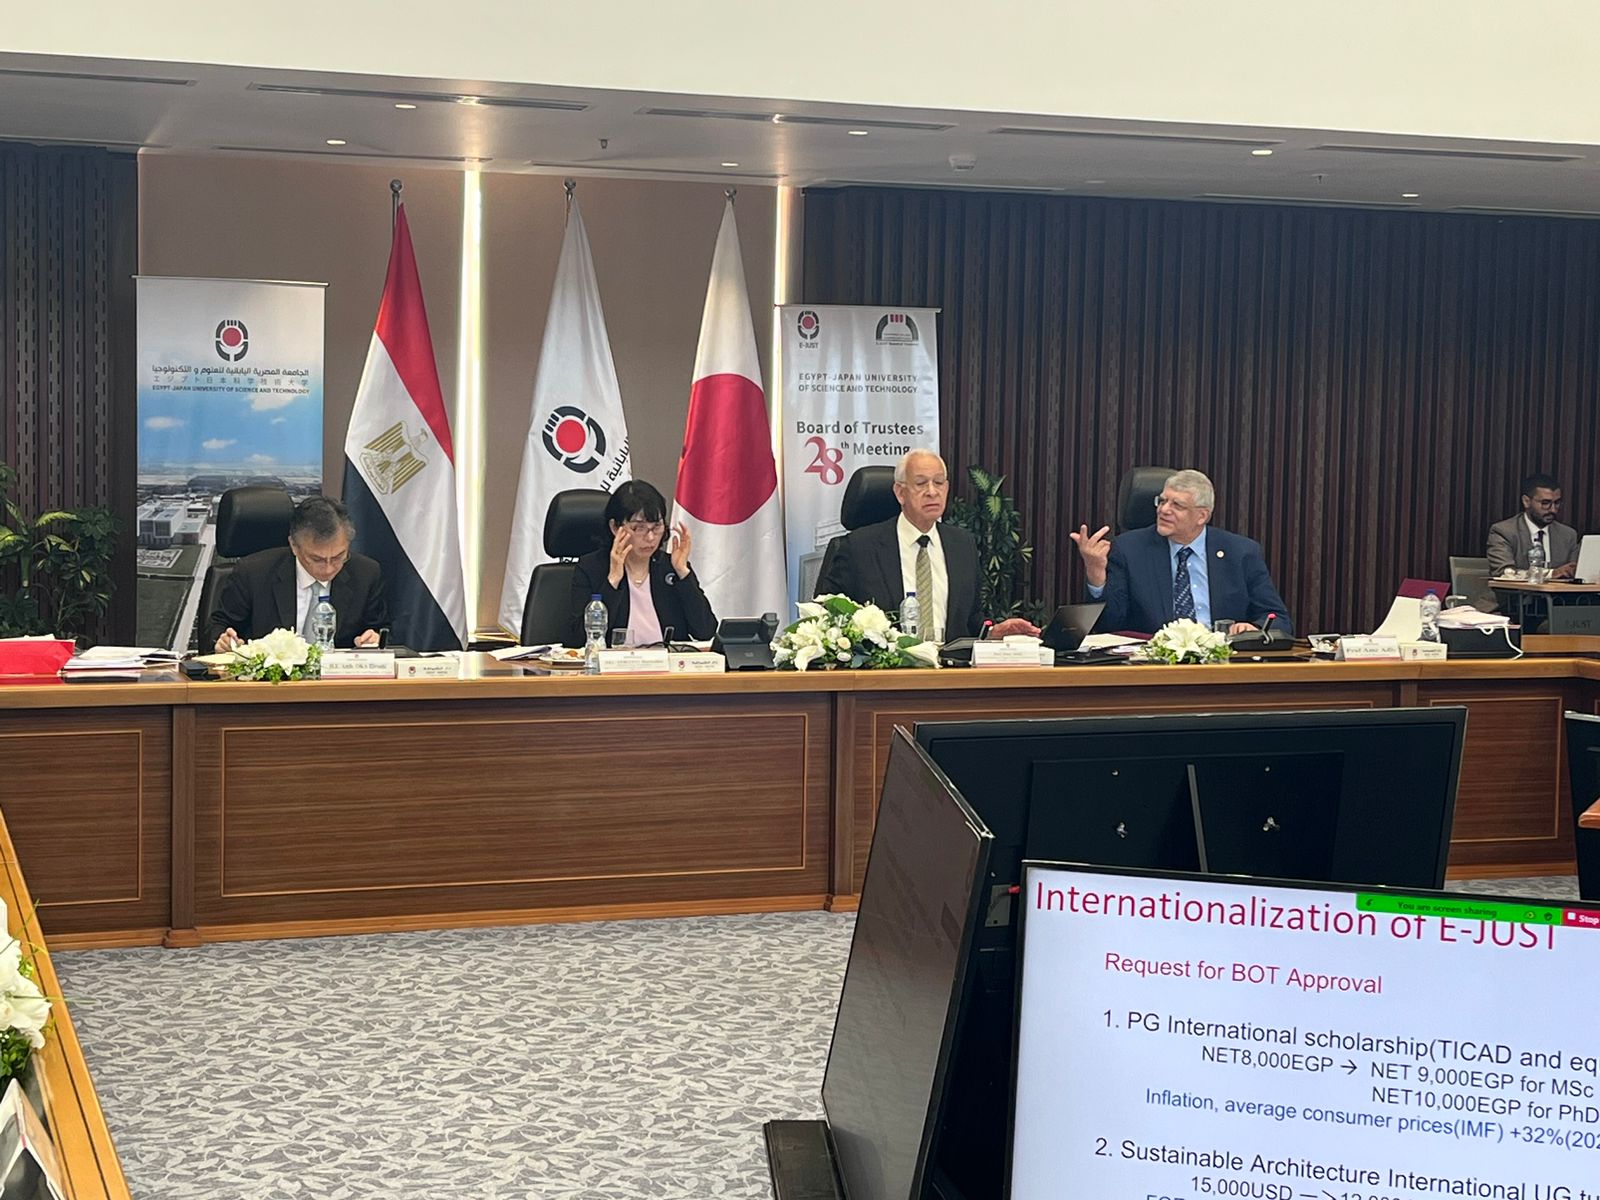 الجامعة المصرية اليابانية   تحصد المرتبة 19 عالميا  فى الطاقة النظيفة و ال ٢١ دوليا بالمياه النظيفة